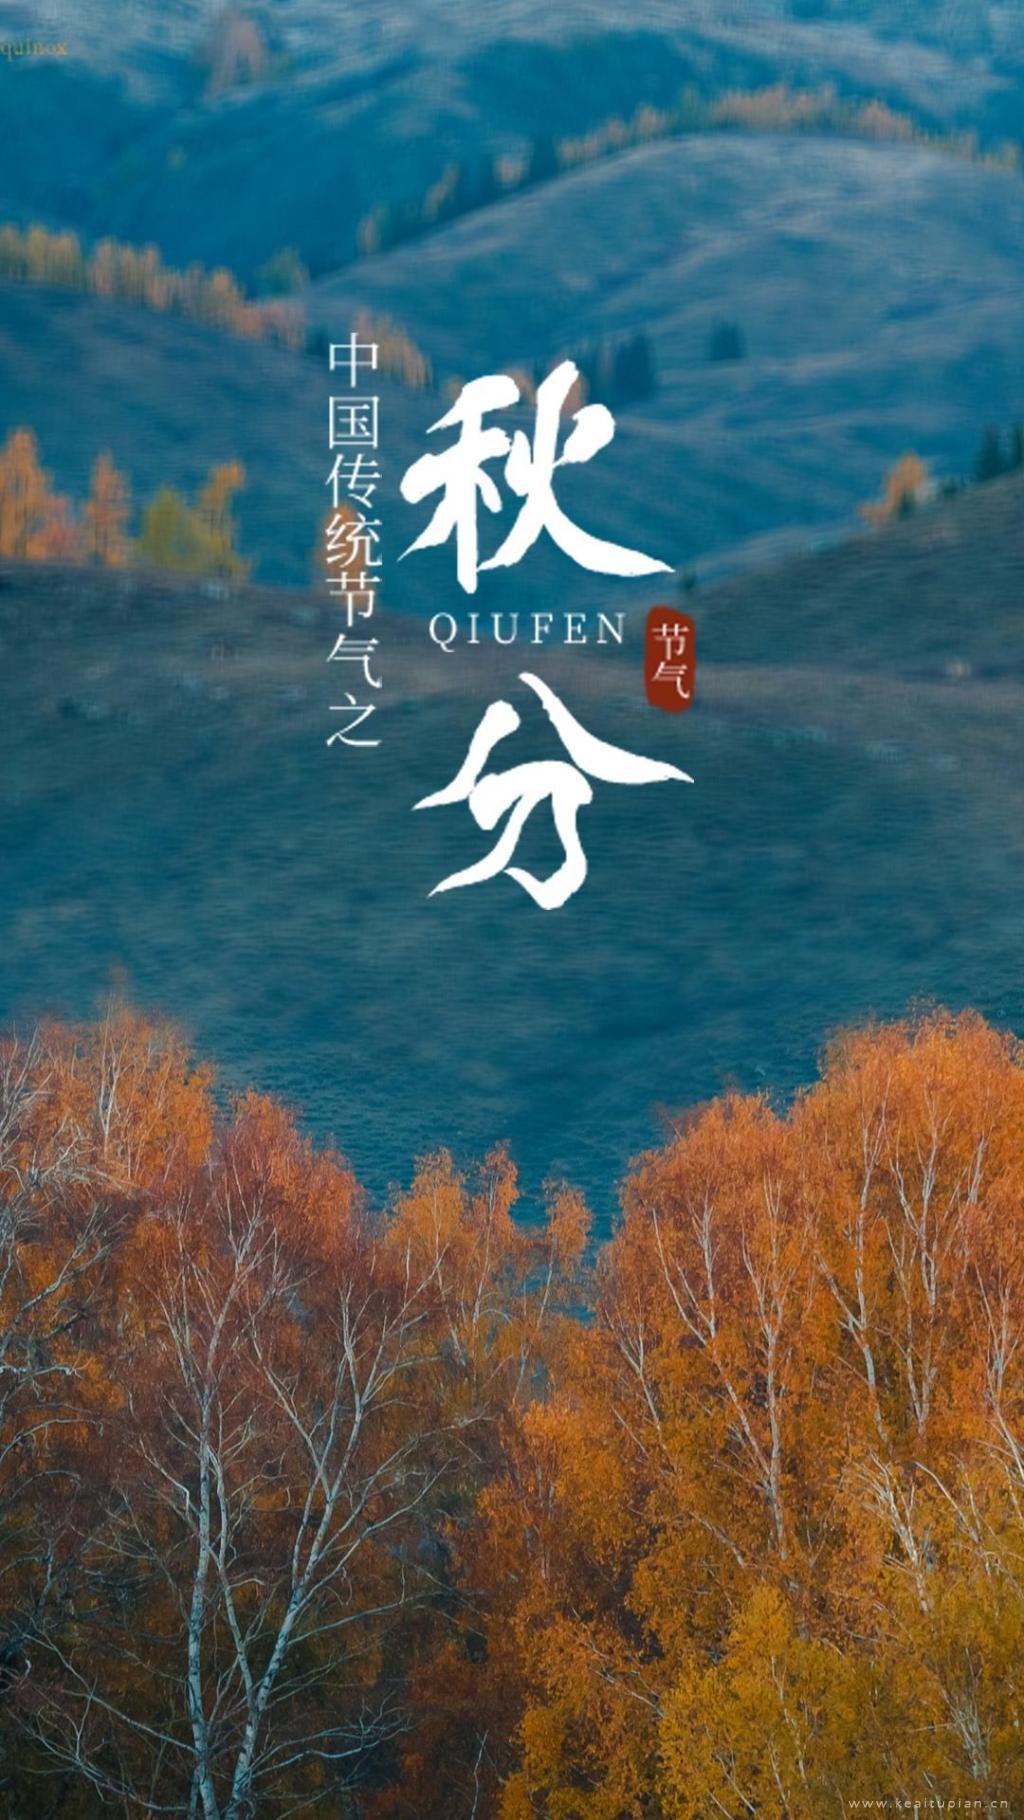 中国传统节气之秋分超美风景手机壁纸图片